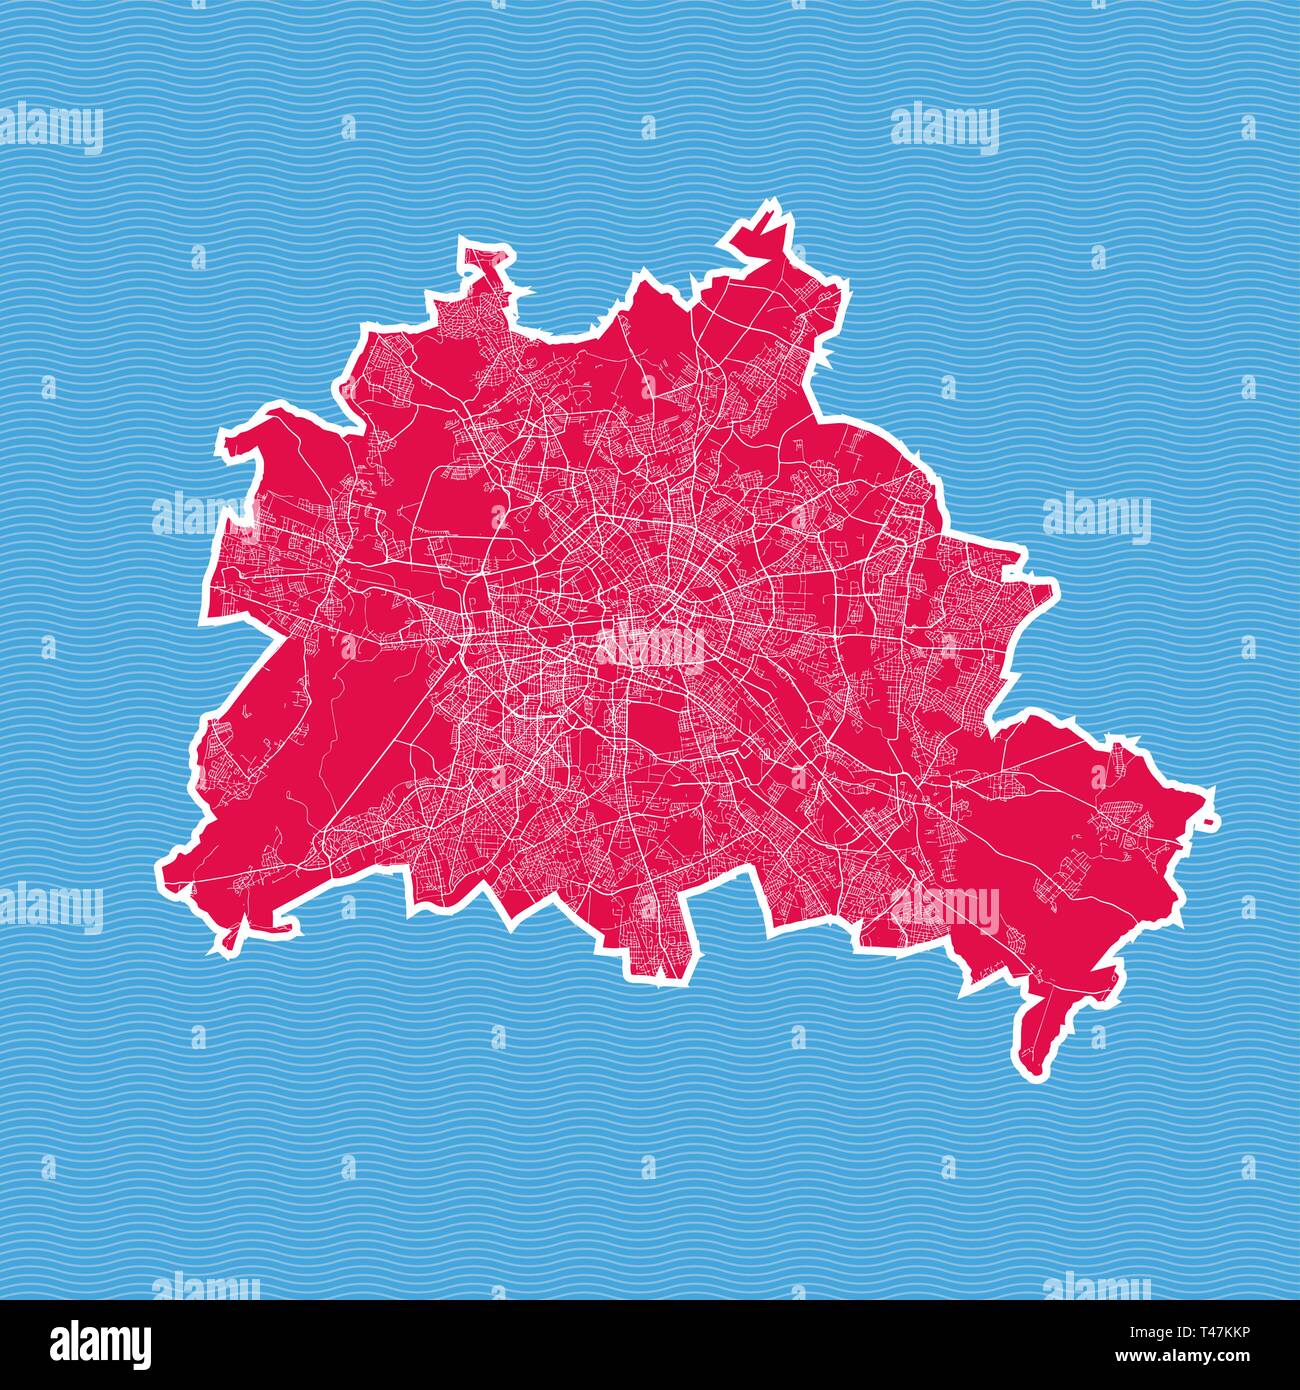 Berlin Karte als Insel. Karte auf Blue Wave Wasser Hintergrund getrennt. Stock Vektor